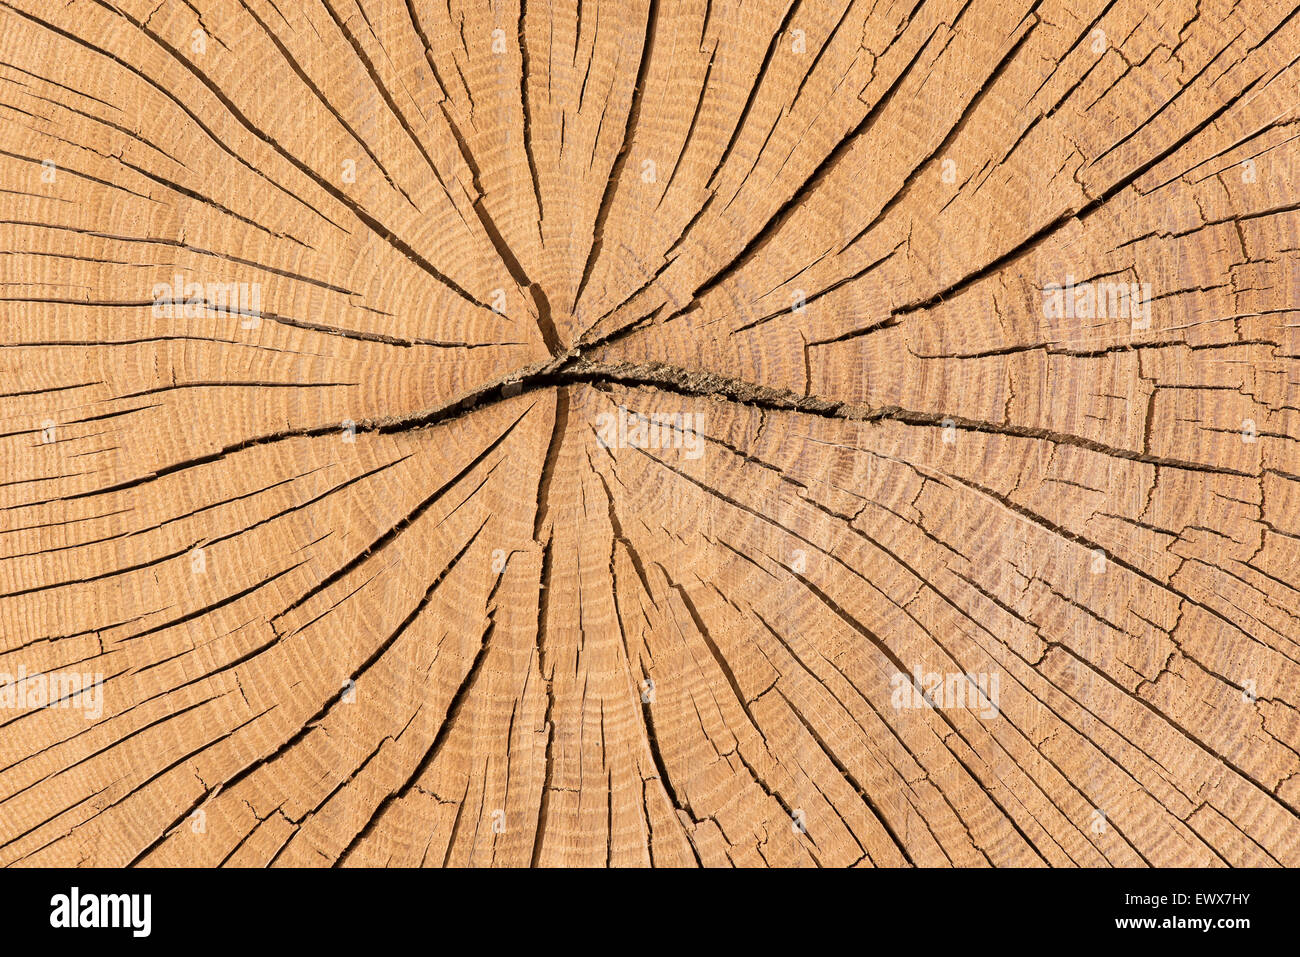 Área transversal de roble (Quercus sp.), tronco con anillos anuales, Baden-Württemberg, Alemania Foto de stock